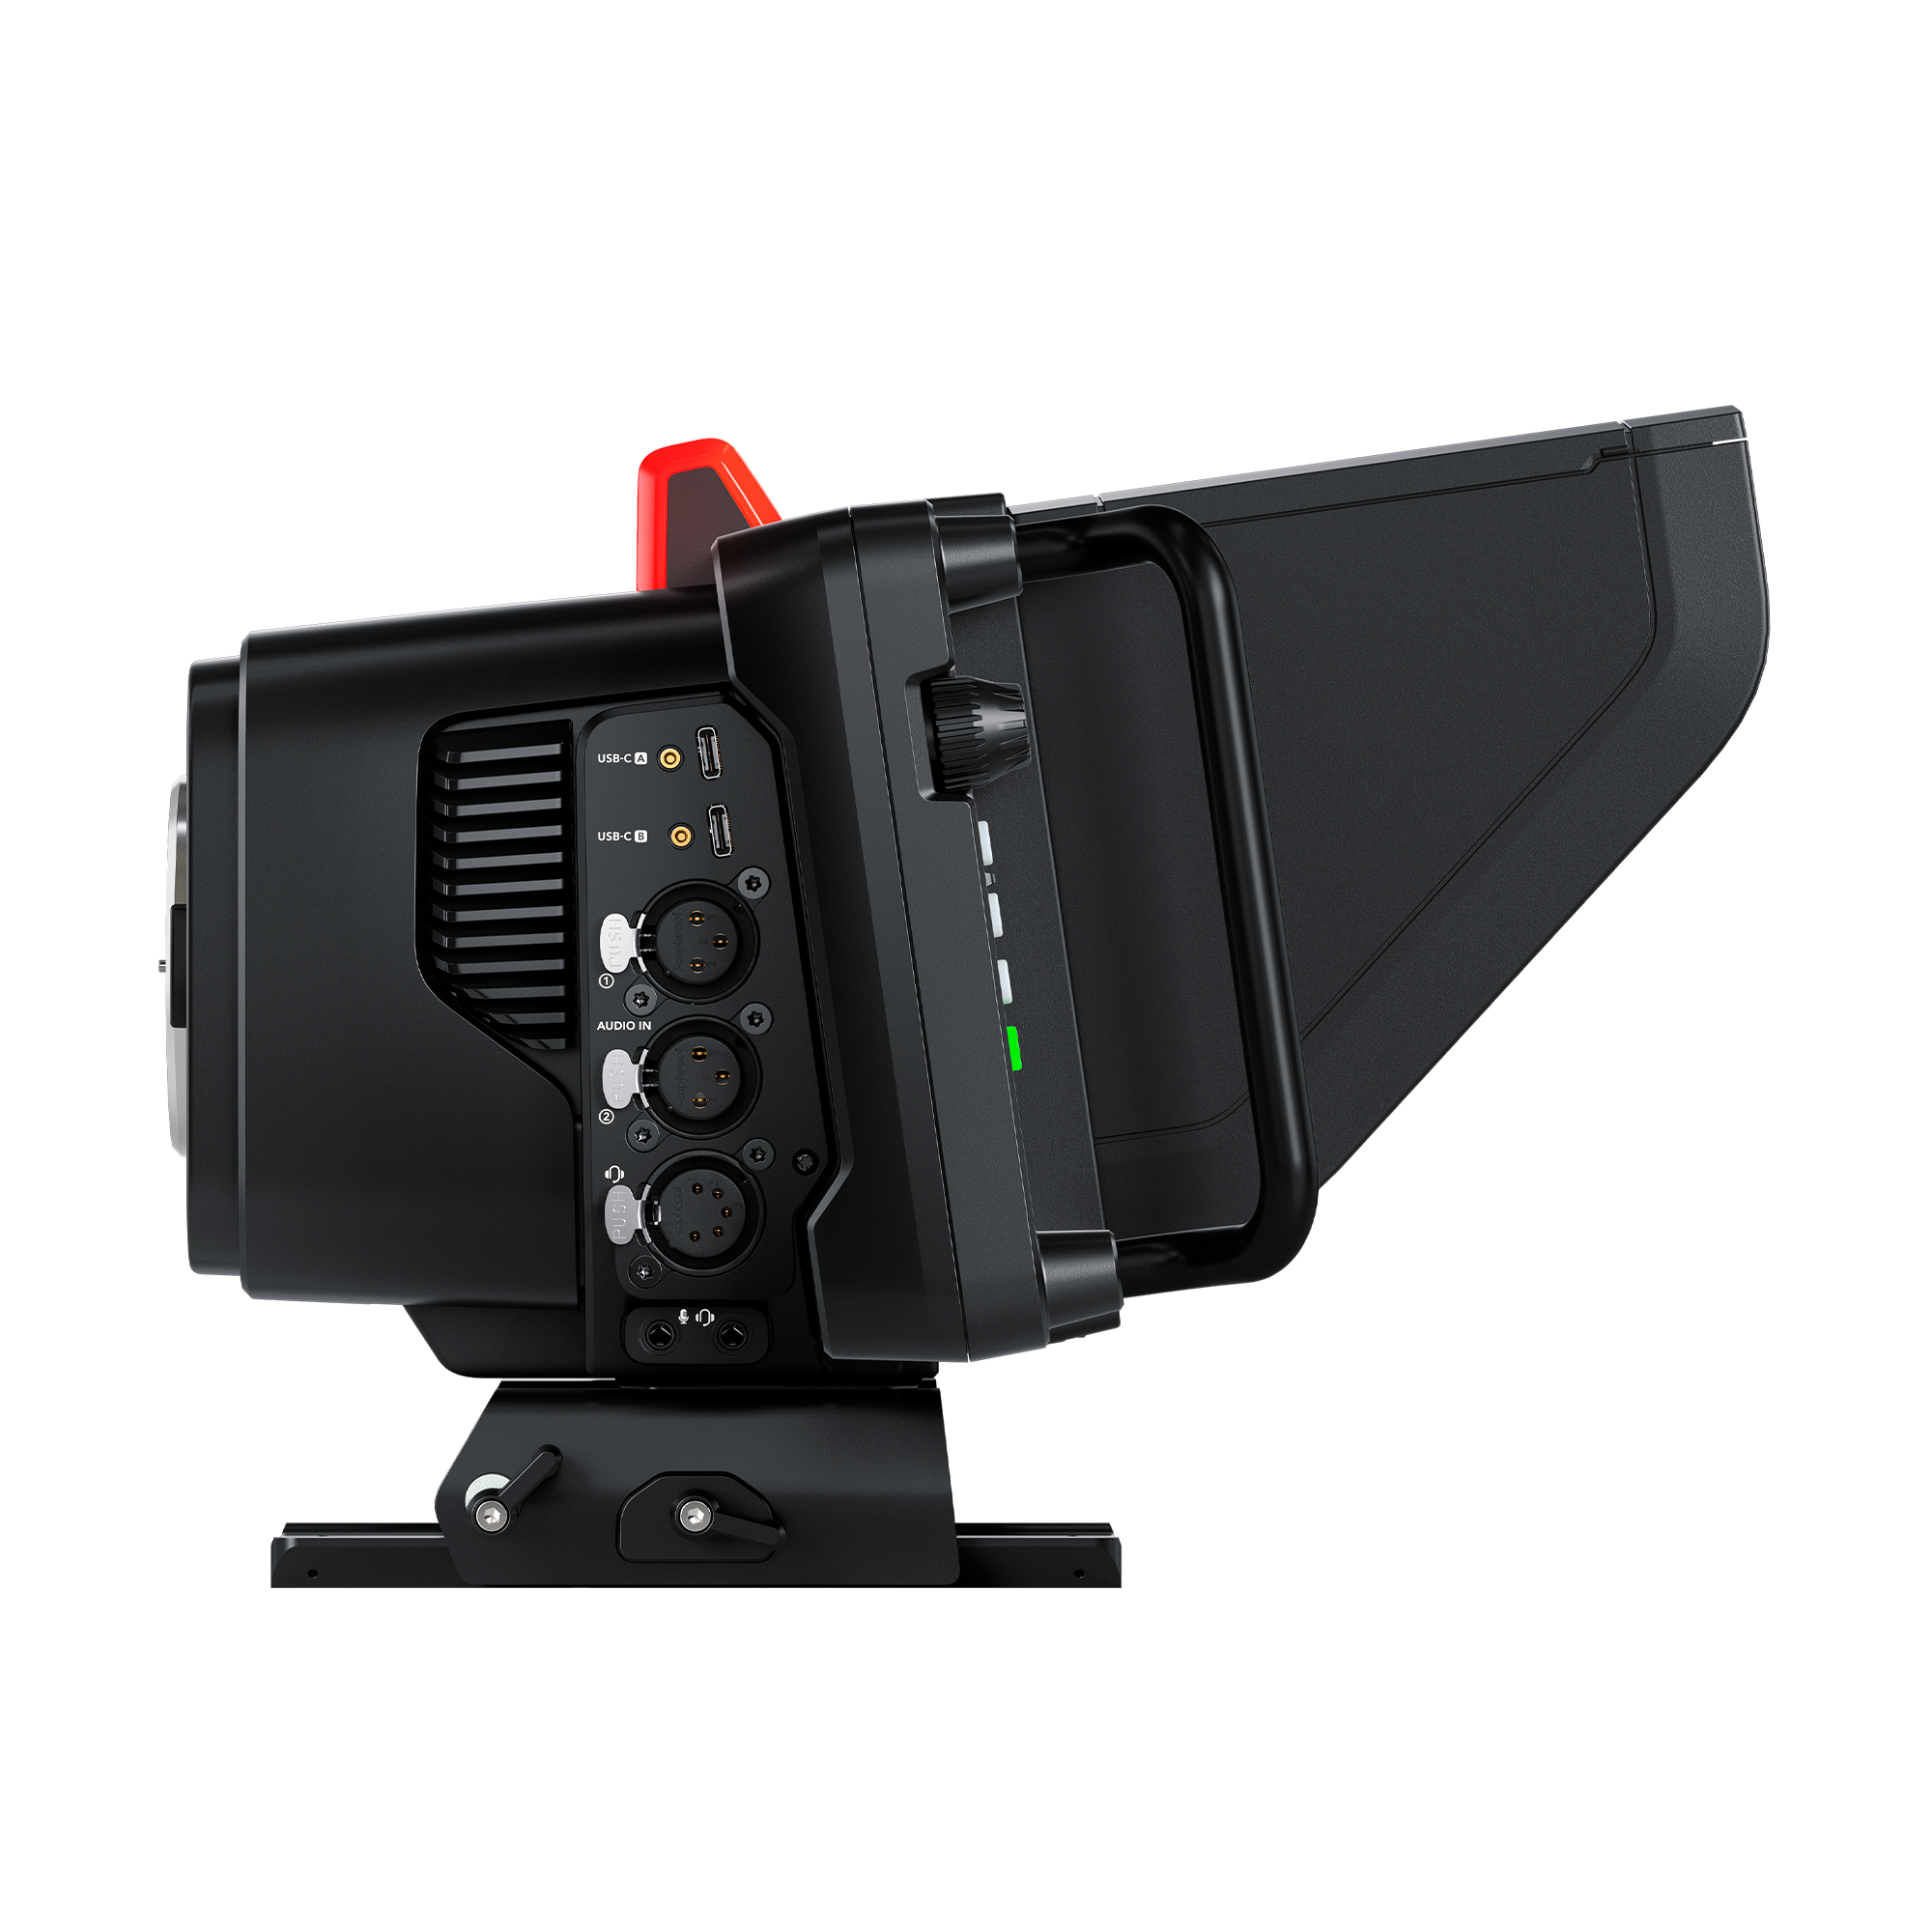 Blackmagic Design announces a new Studio Camera 6K Pro: Digital